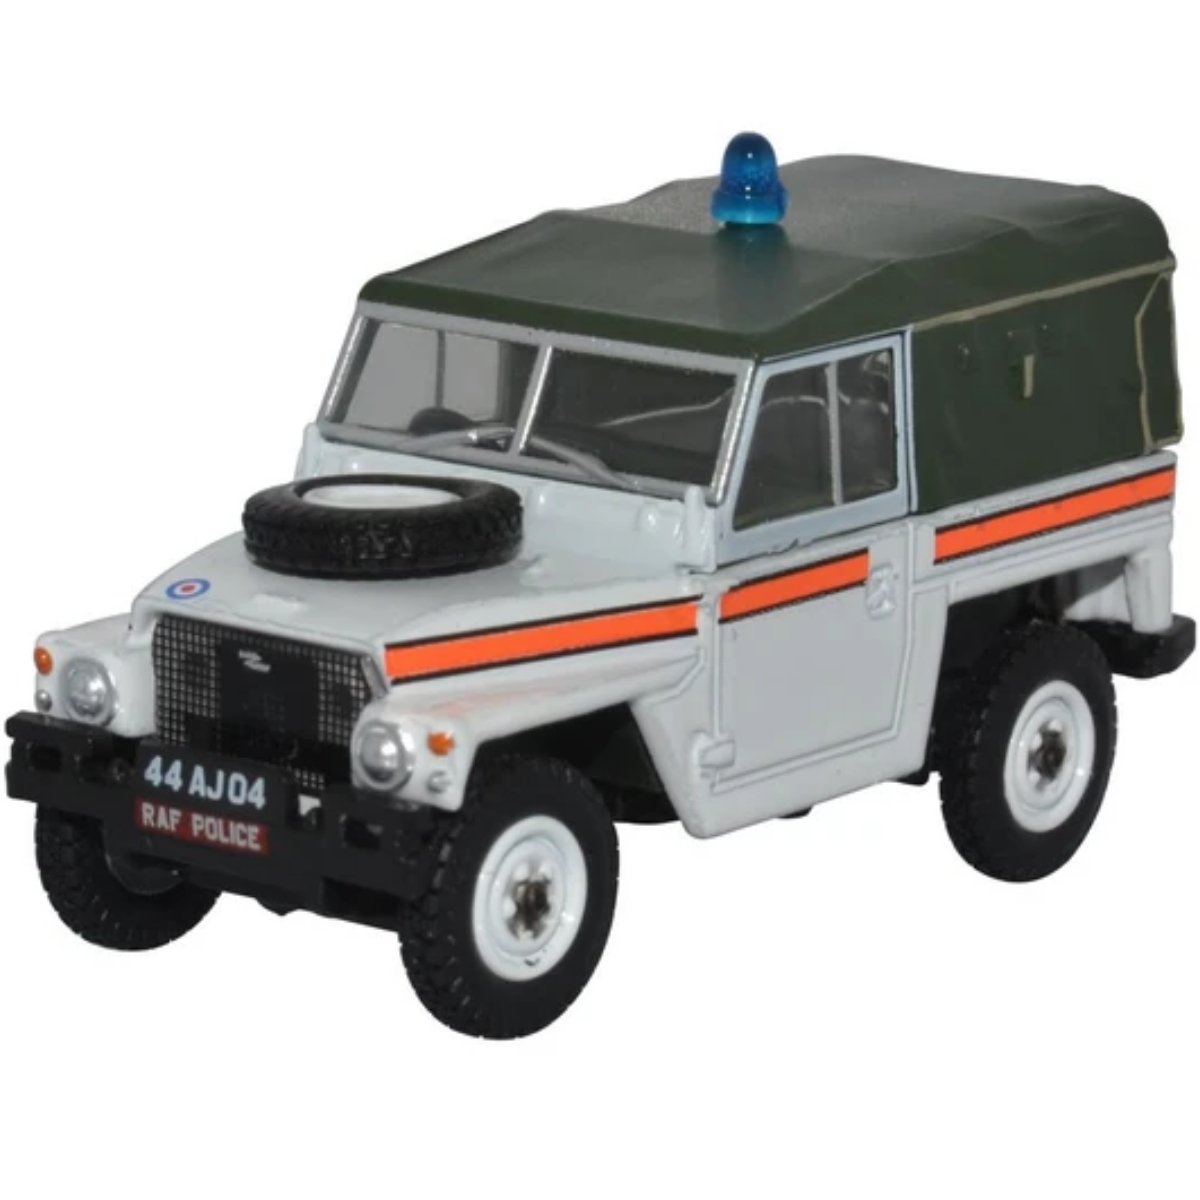 Oxford Diecast 76LRL010 RAF Police, Akrotiri Land Rover Lightweight - Phillips Hobbies